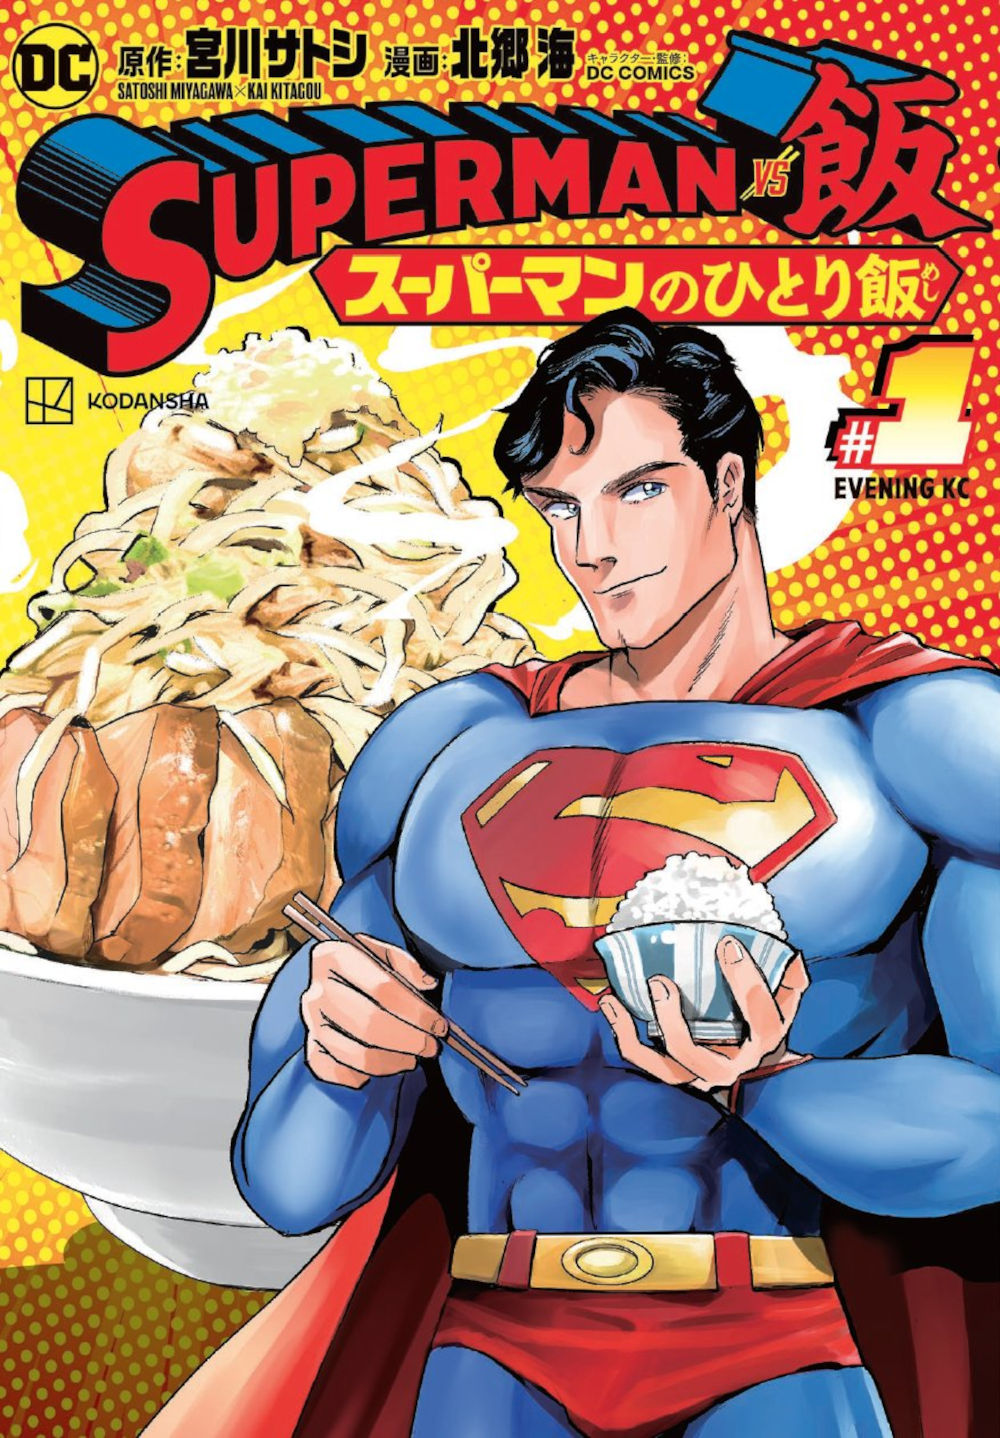 Superman consigue su propio manga de comida en Japón